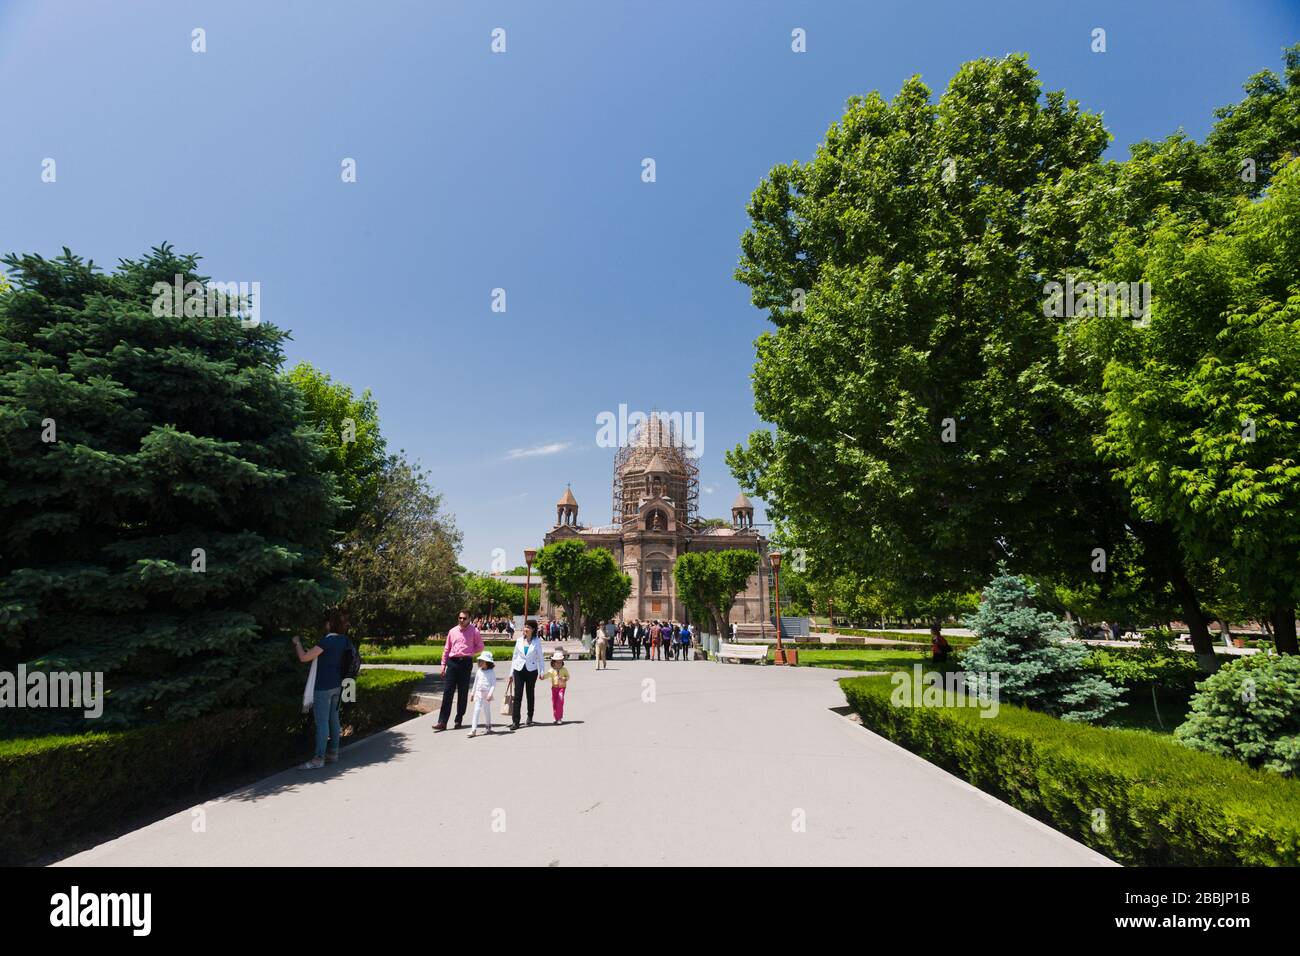 Muttersee des Heiligen Etschmiadzin, Kathedrale von Echmiadzin Komplex, armenisch orthodoxe Kirche, Echmiadzin, Vagharshapat, Jerewan, Armenien, Kaukasus, Asien Stockfoto